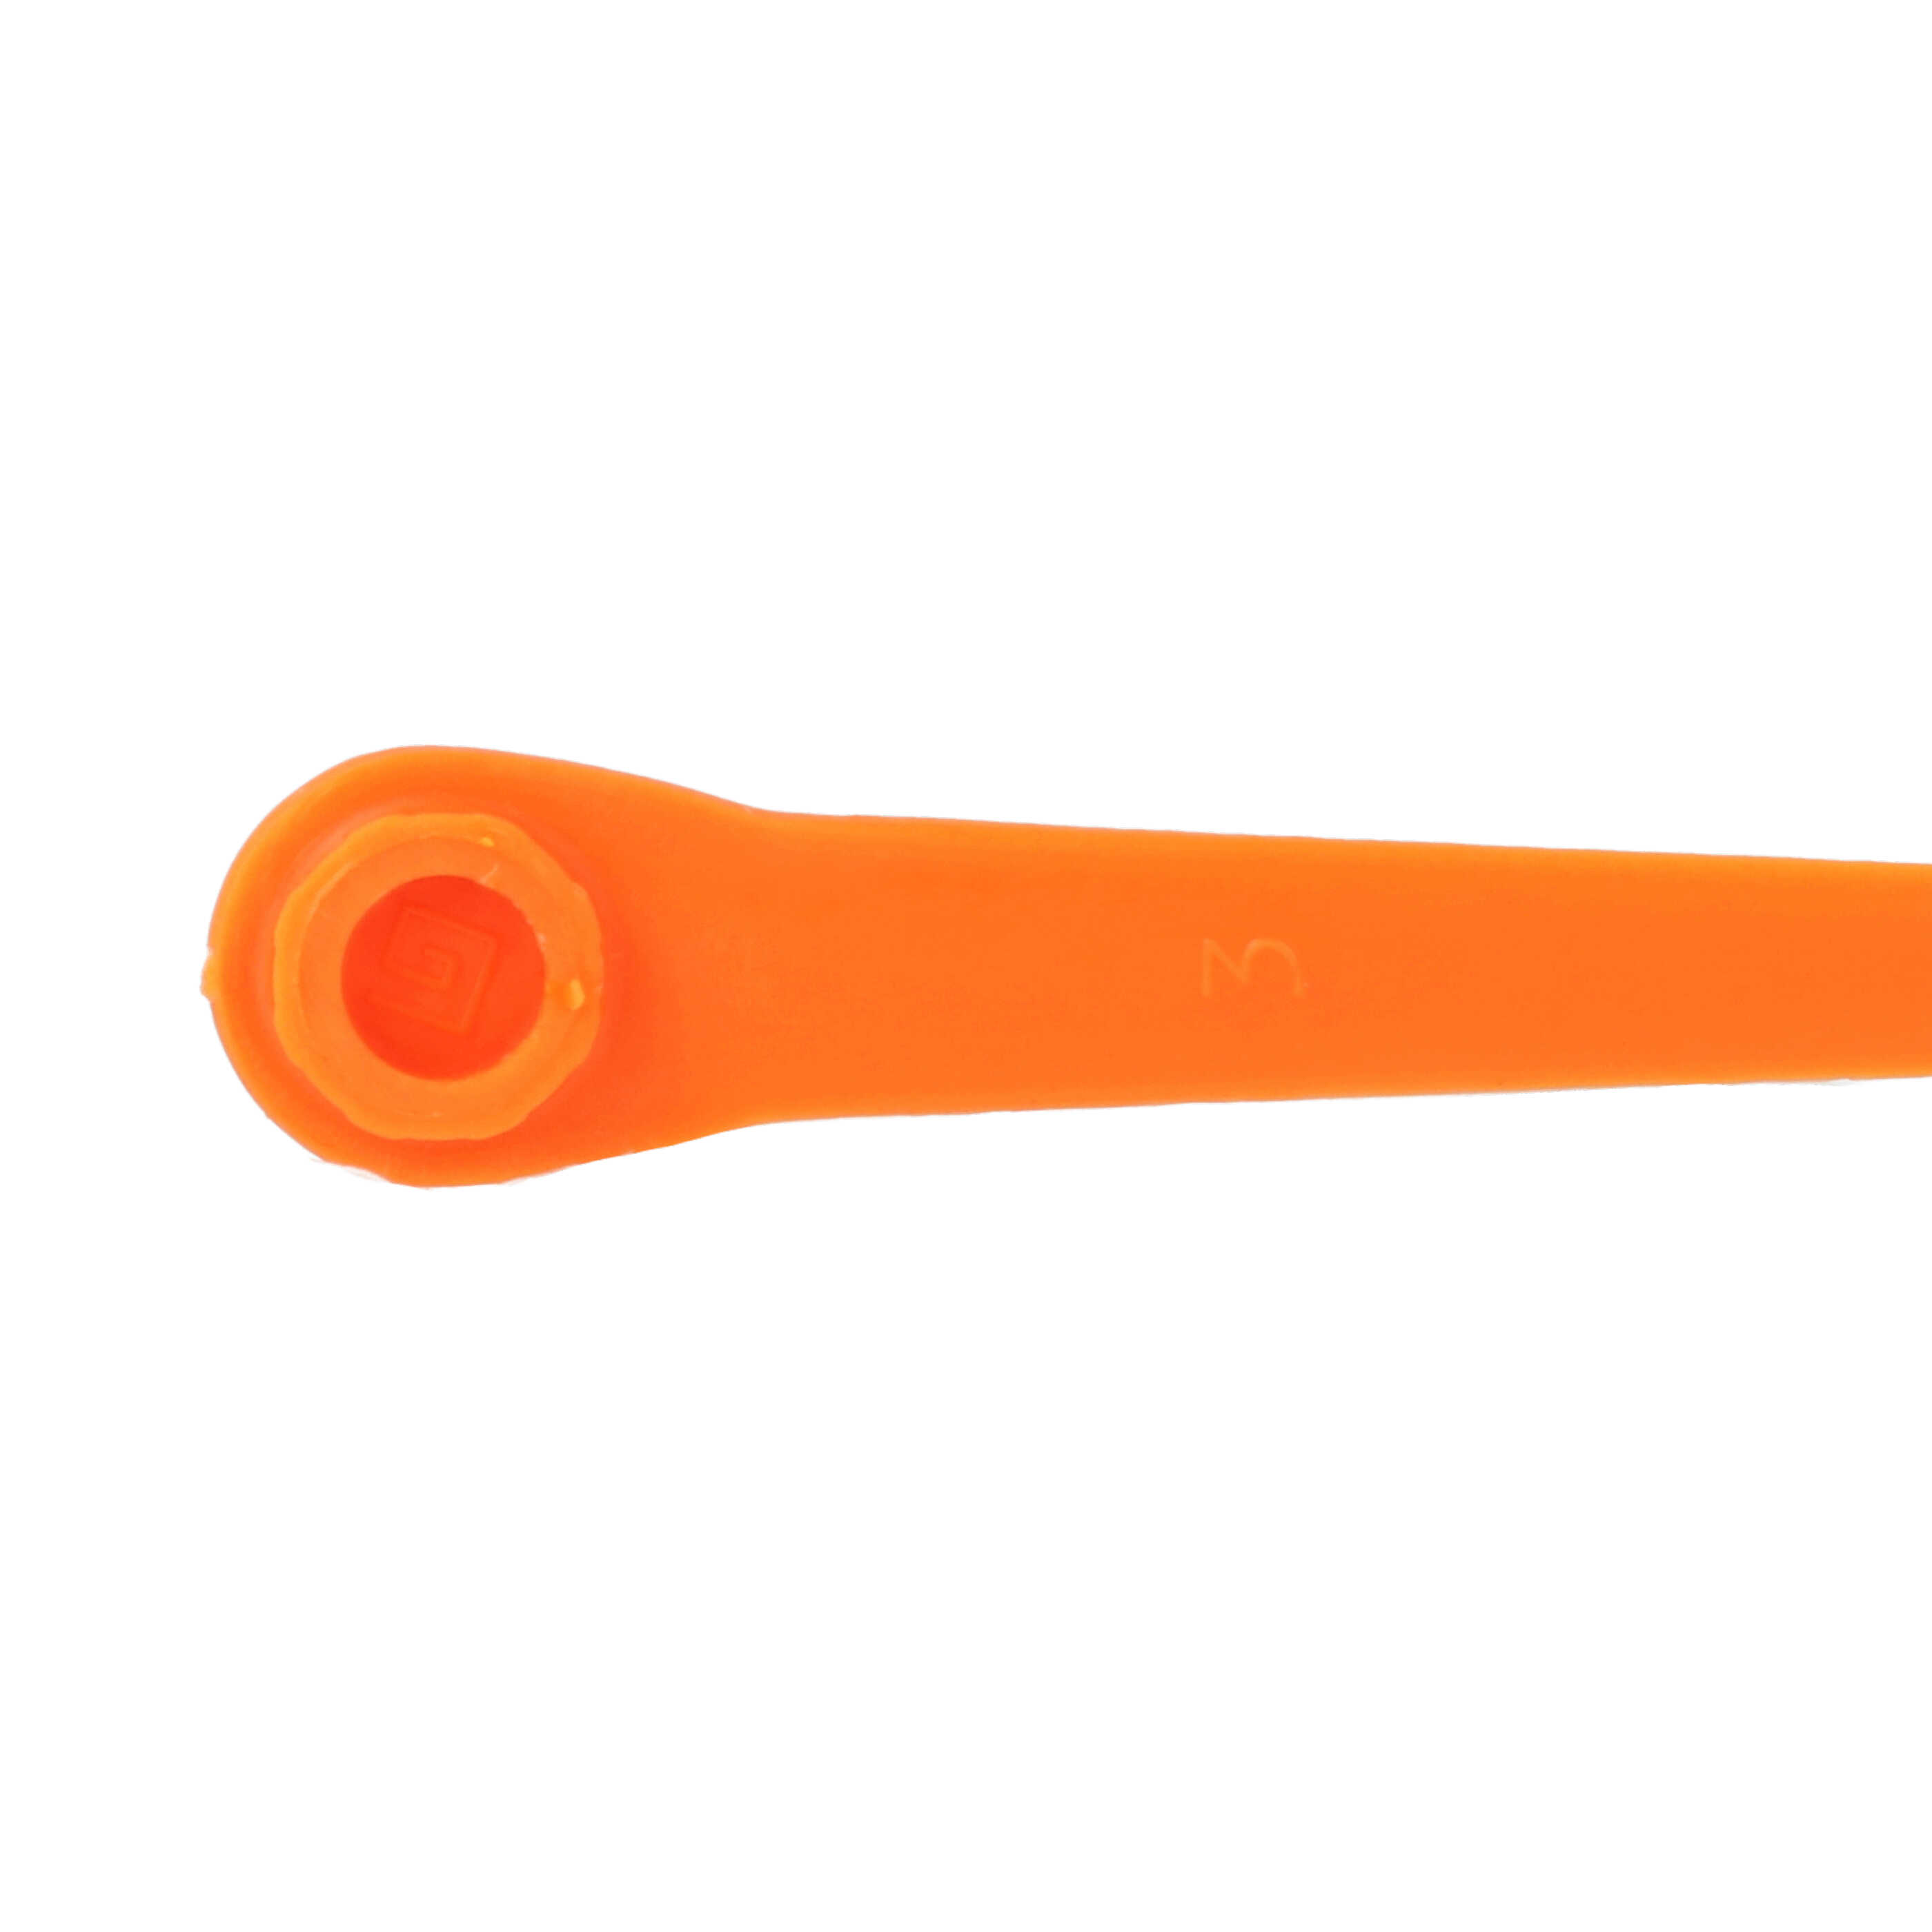 50x Lames remplace Gardena RotorCut 5368-20 pour débroussailleuse – Couteaux plastique, Orange